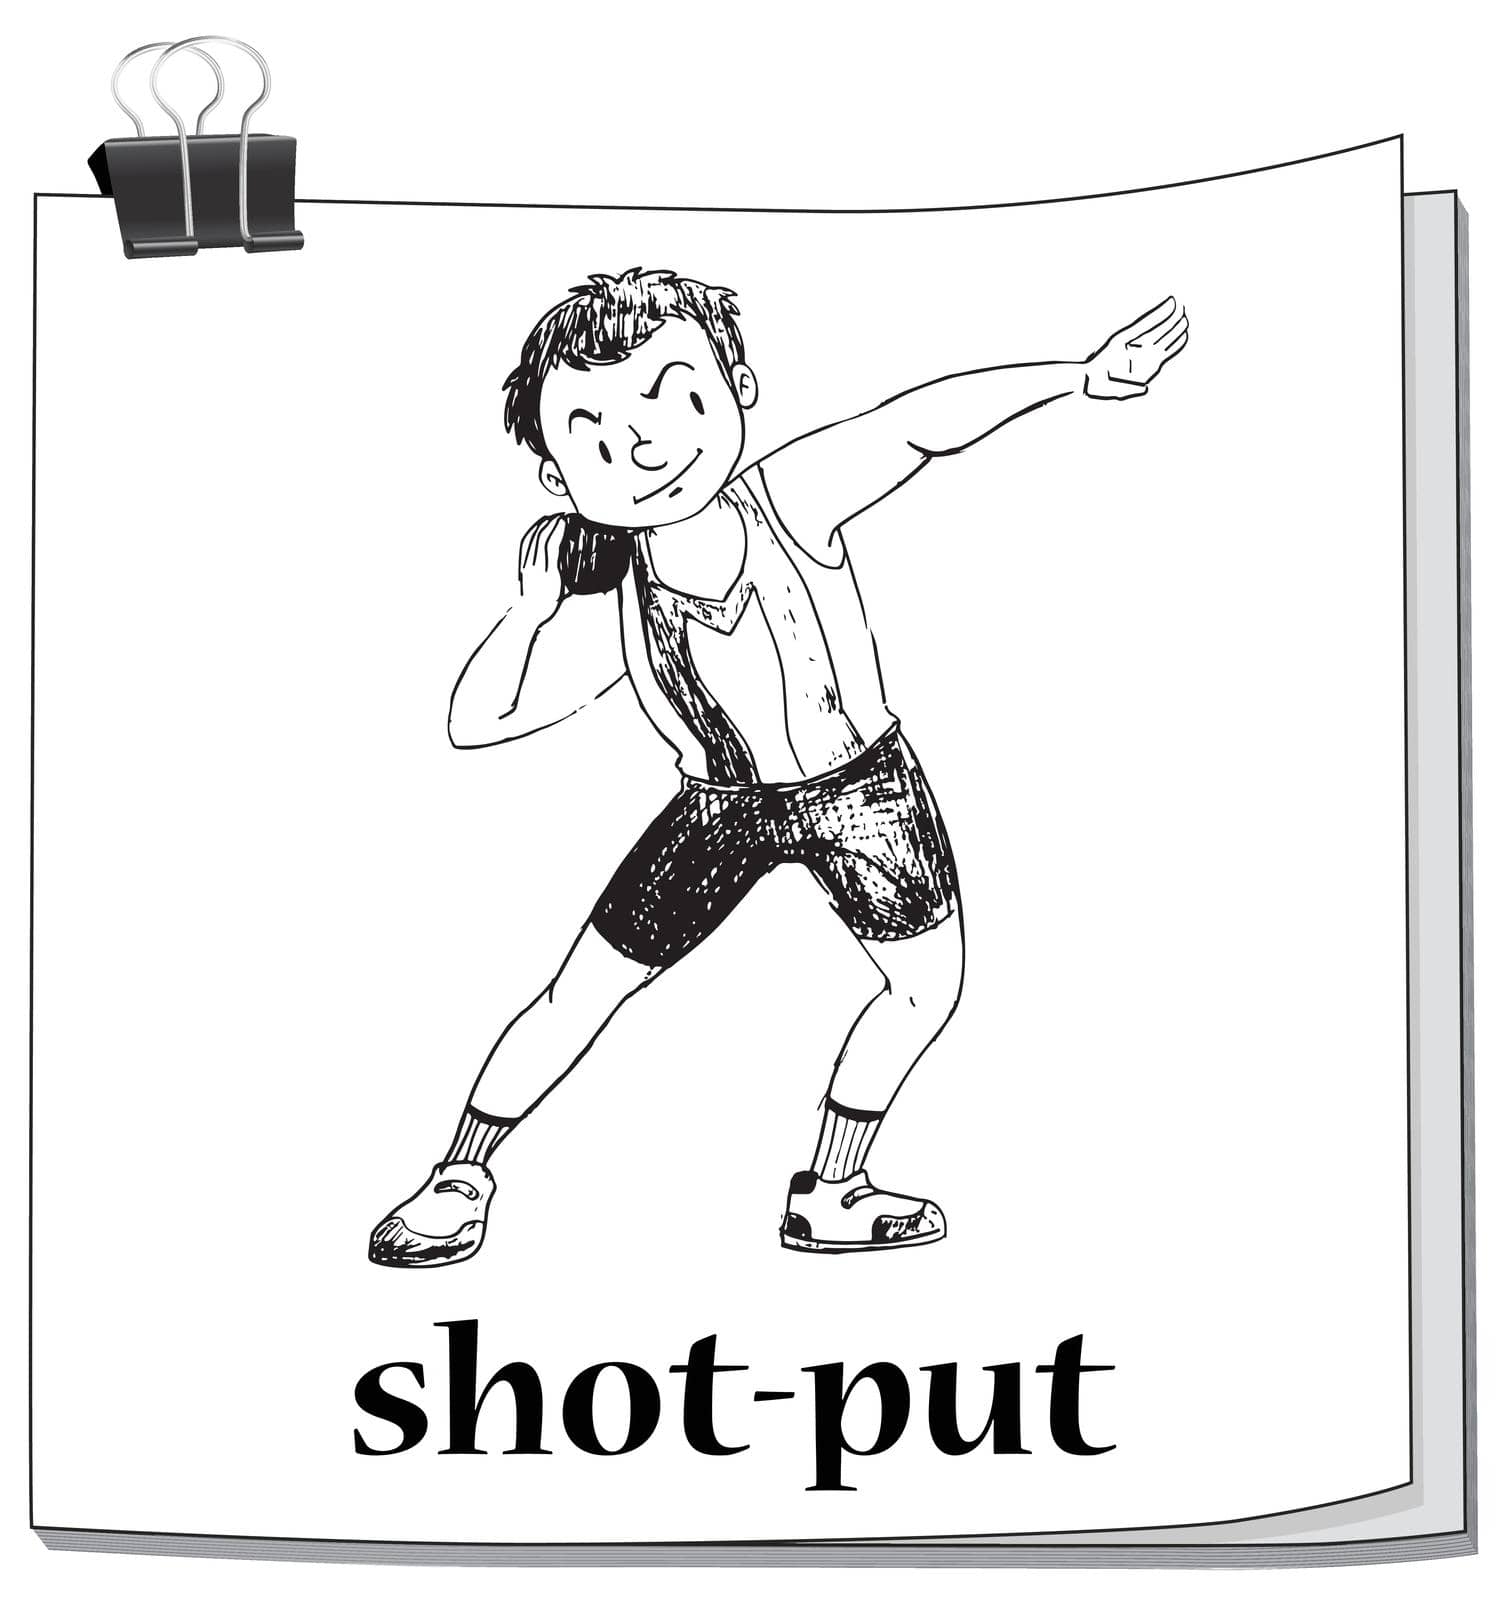 Shot put sport on paper illustration